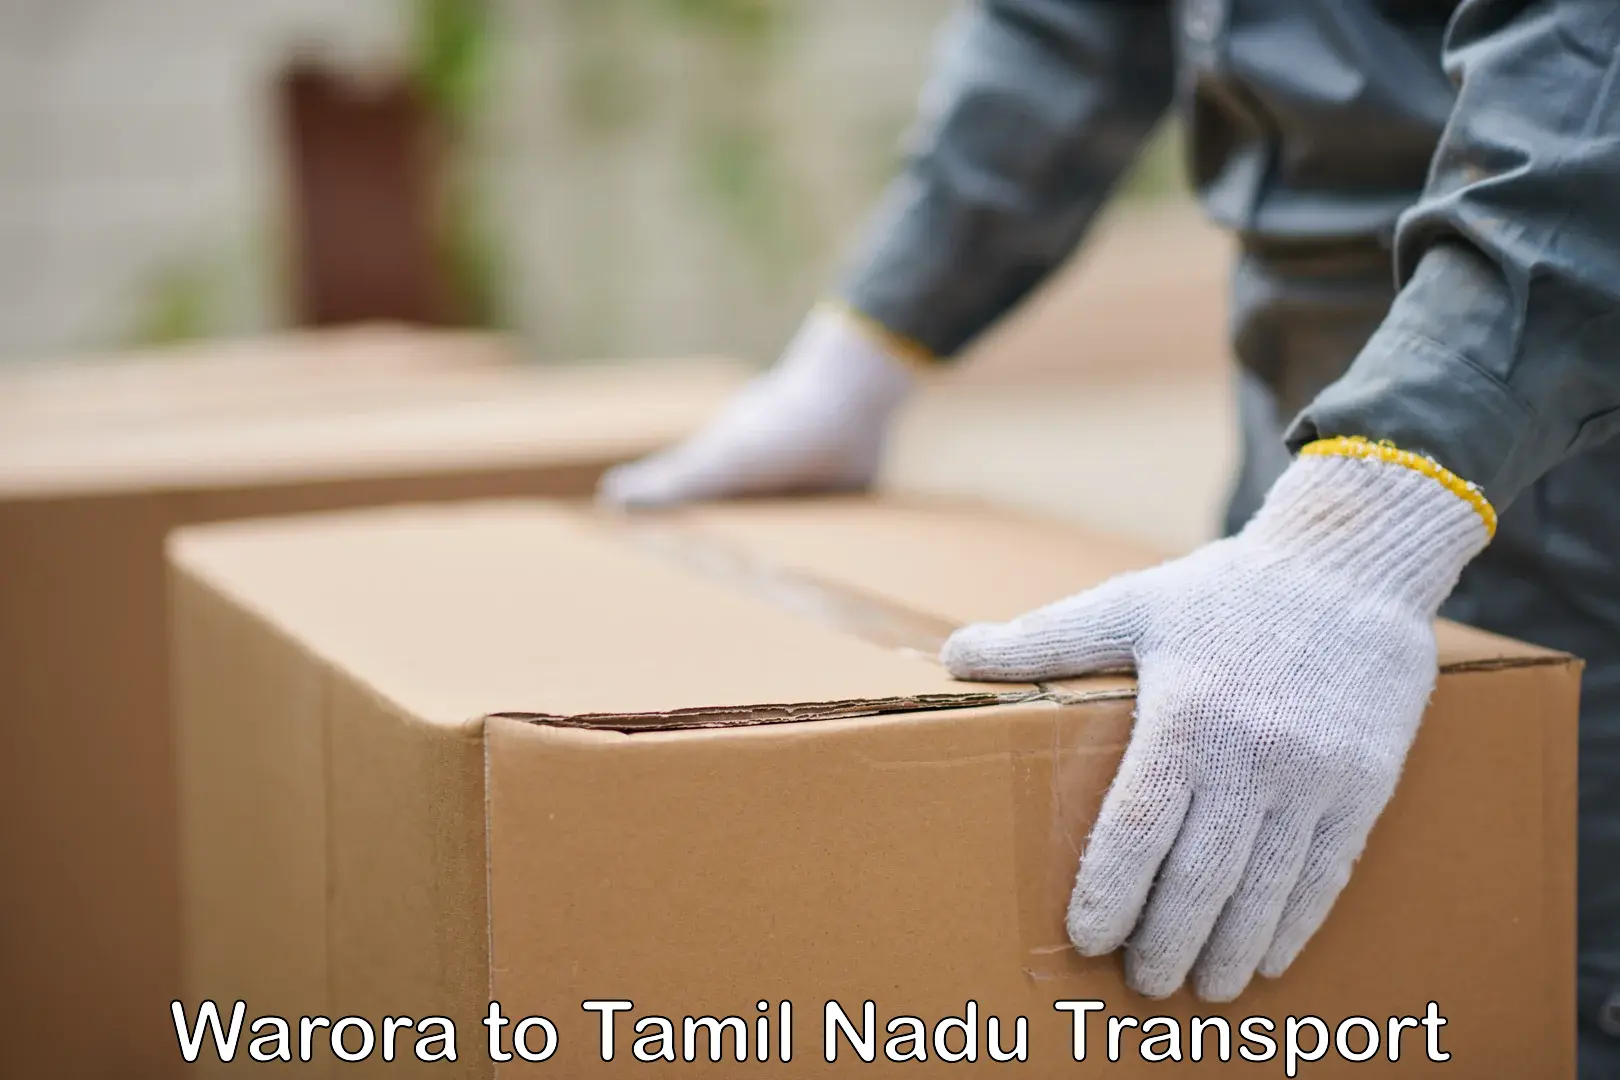 Interstate transport services Warora to Tamil Nadu